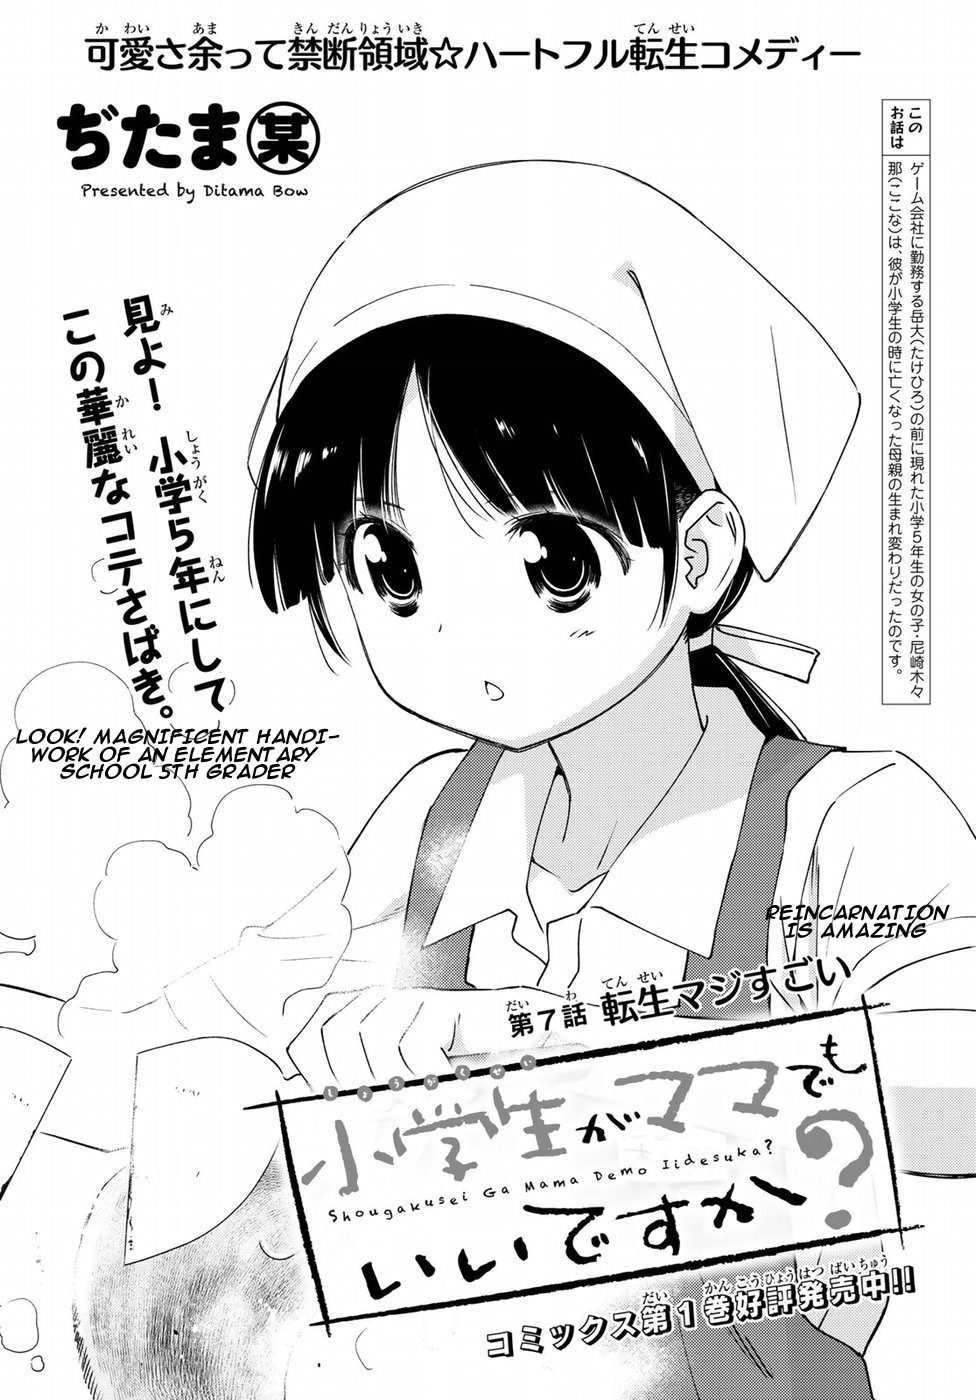 Shougakusei ga Mama demo Ii desu ka? Vol. 1 Ch. 7 Tensei Majisugoi "Reincarnation is Amazing"